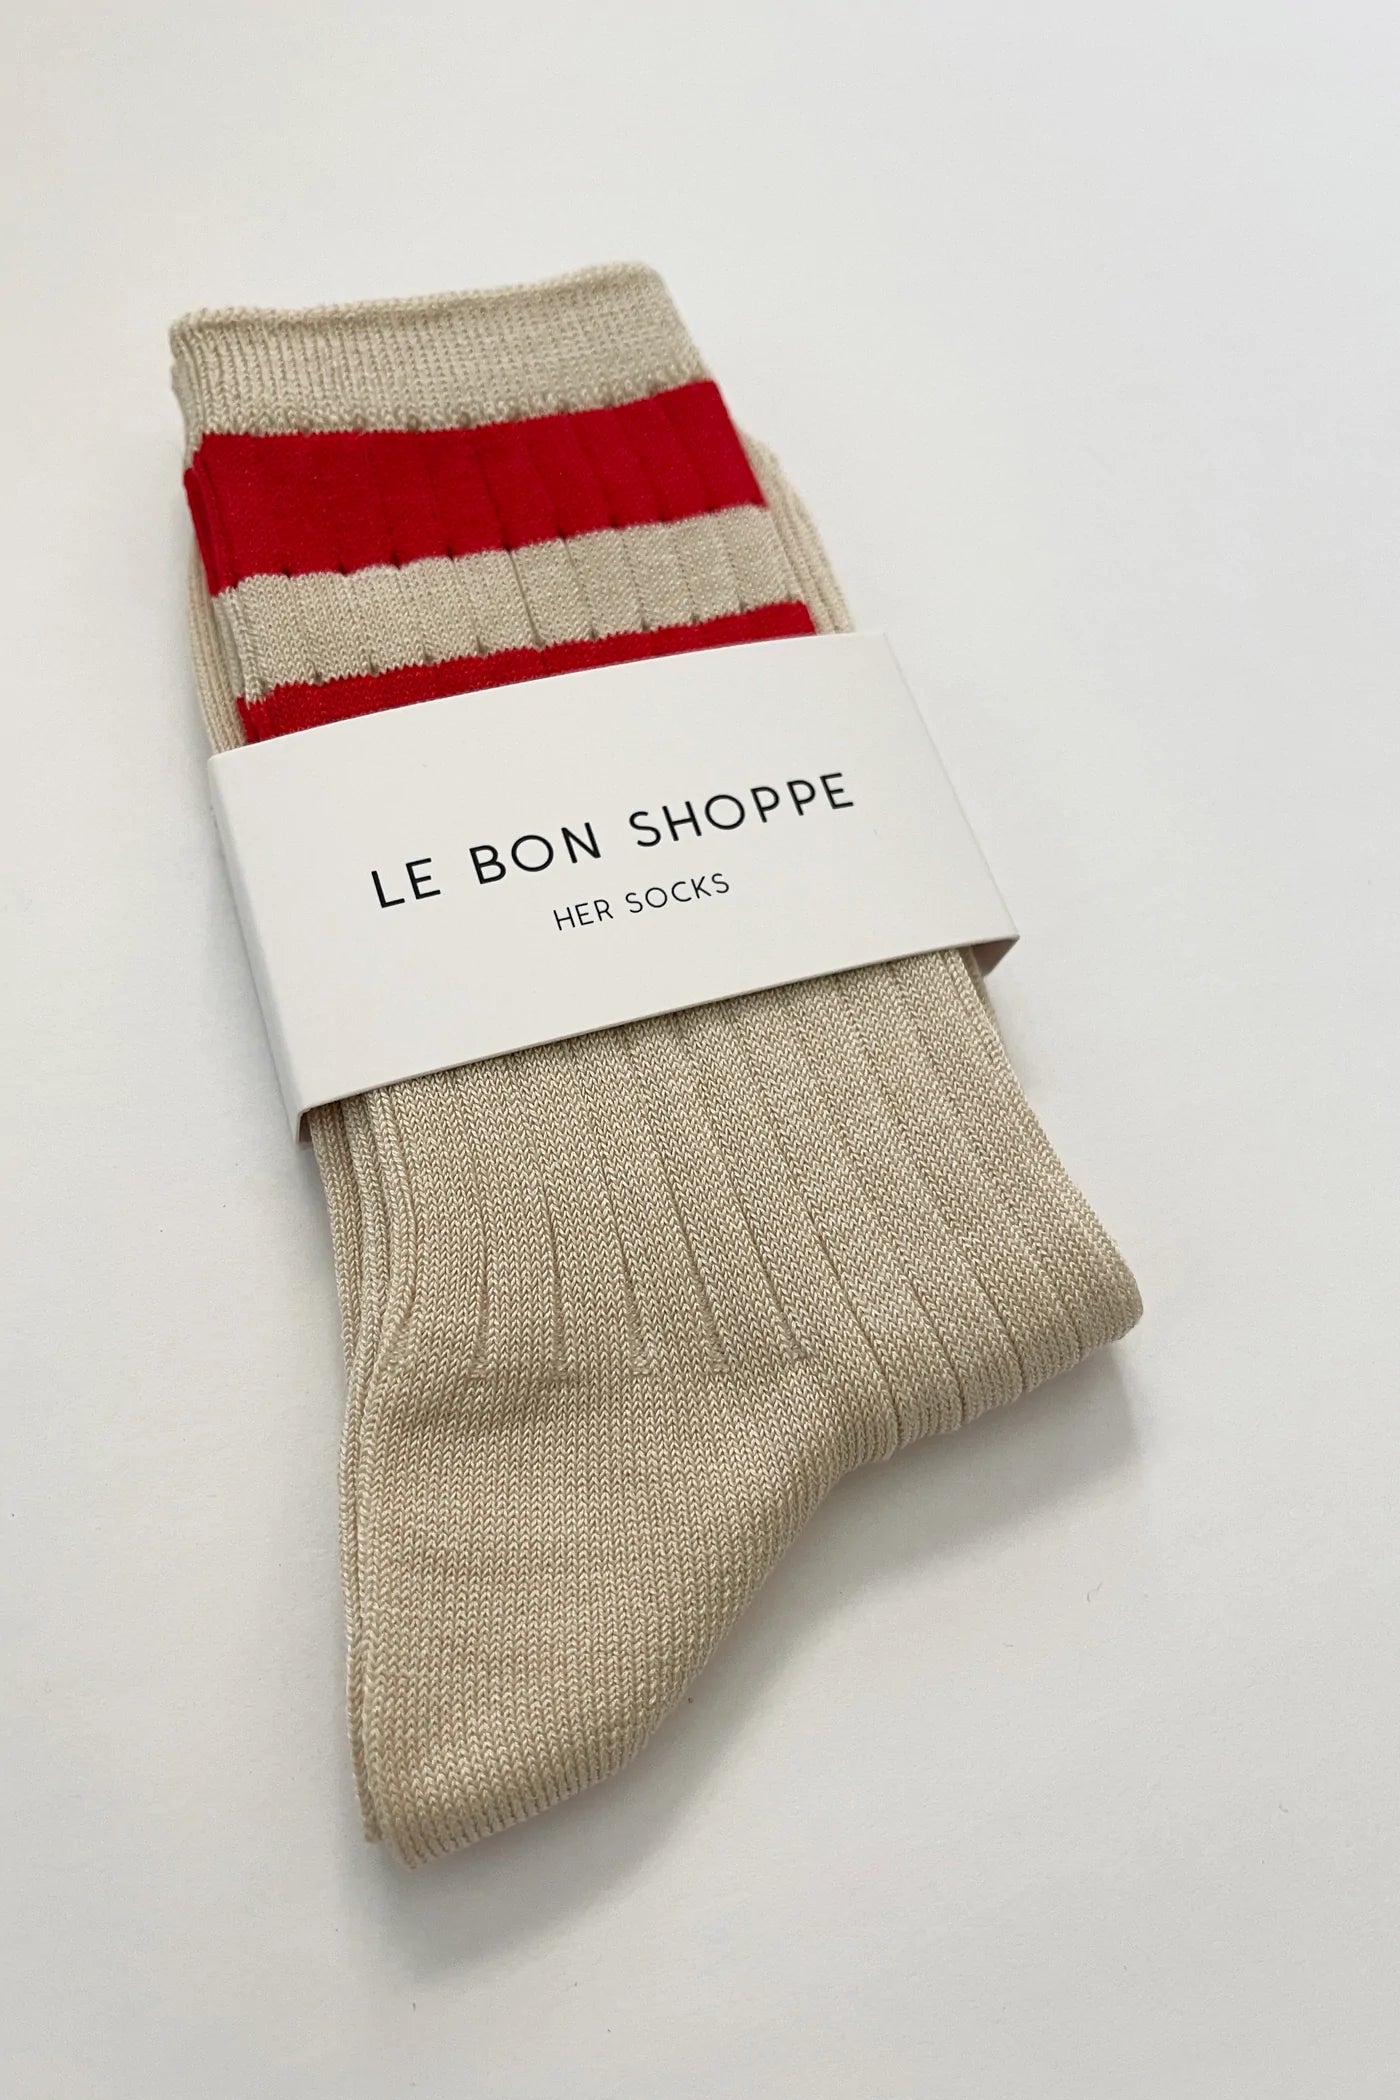 Le Bon Shoppe | Her Varsity Socks - Red